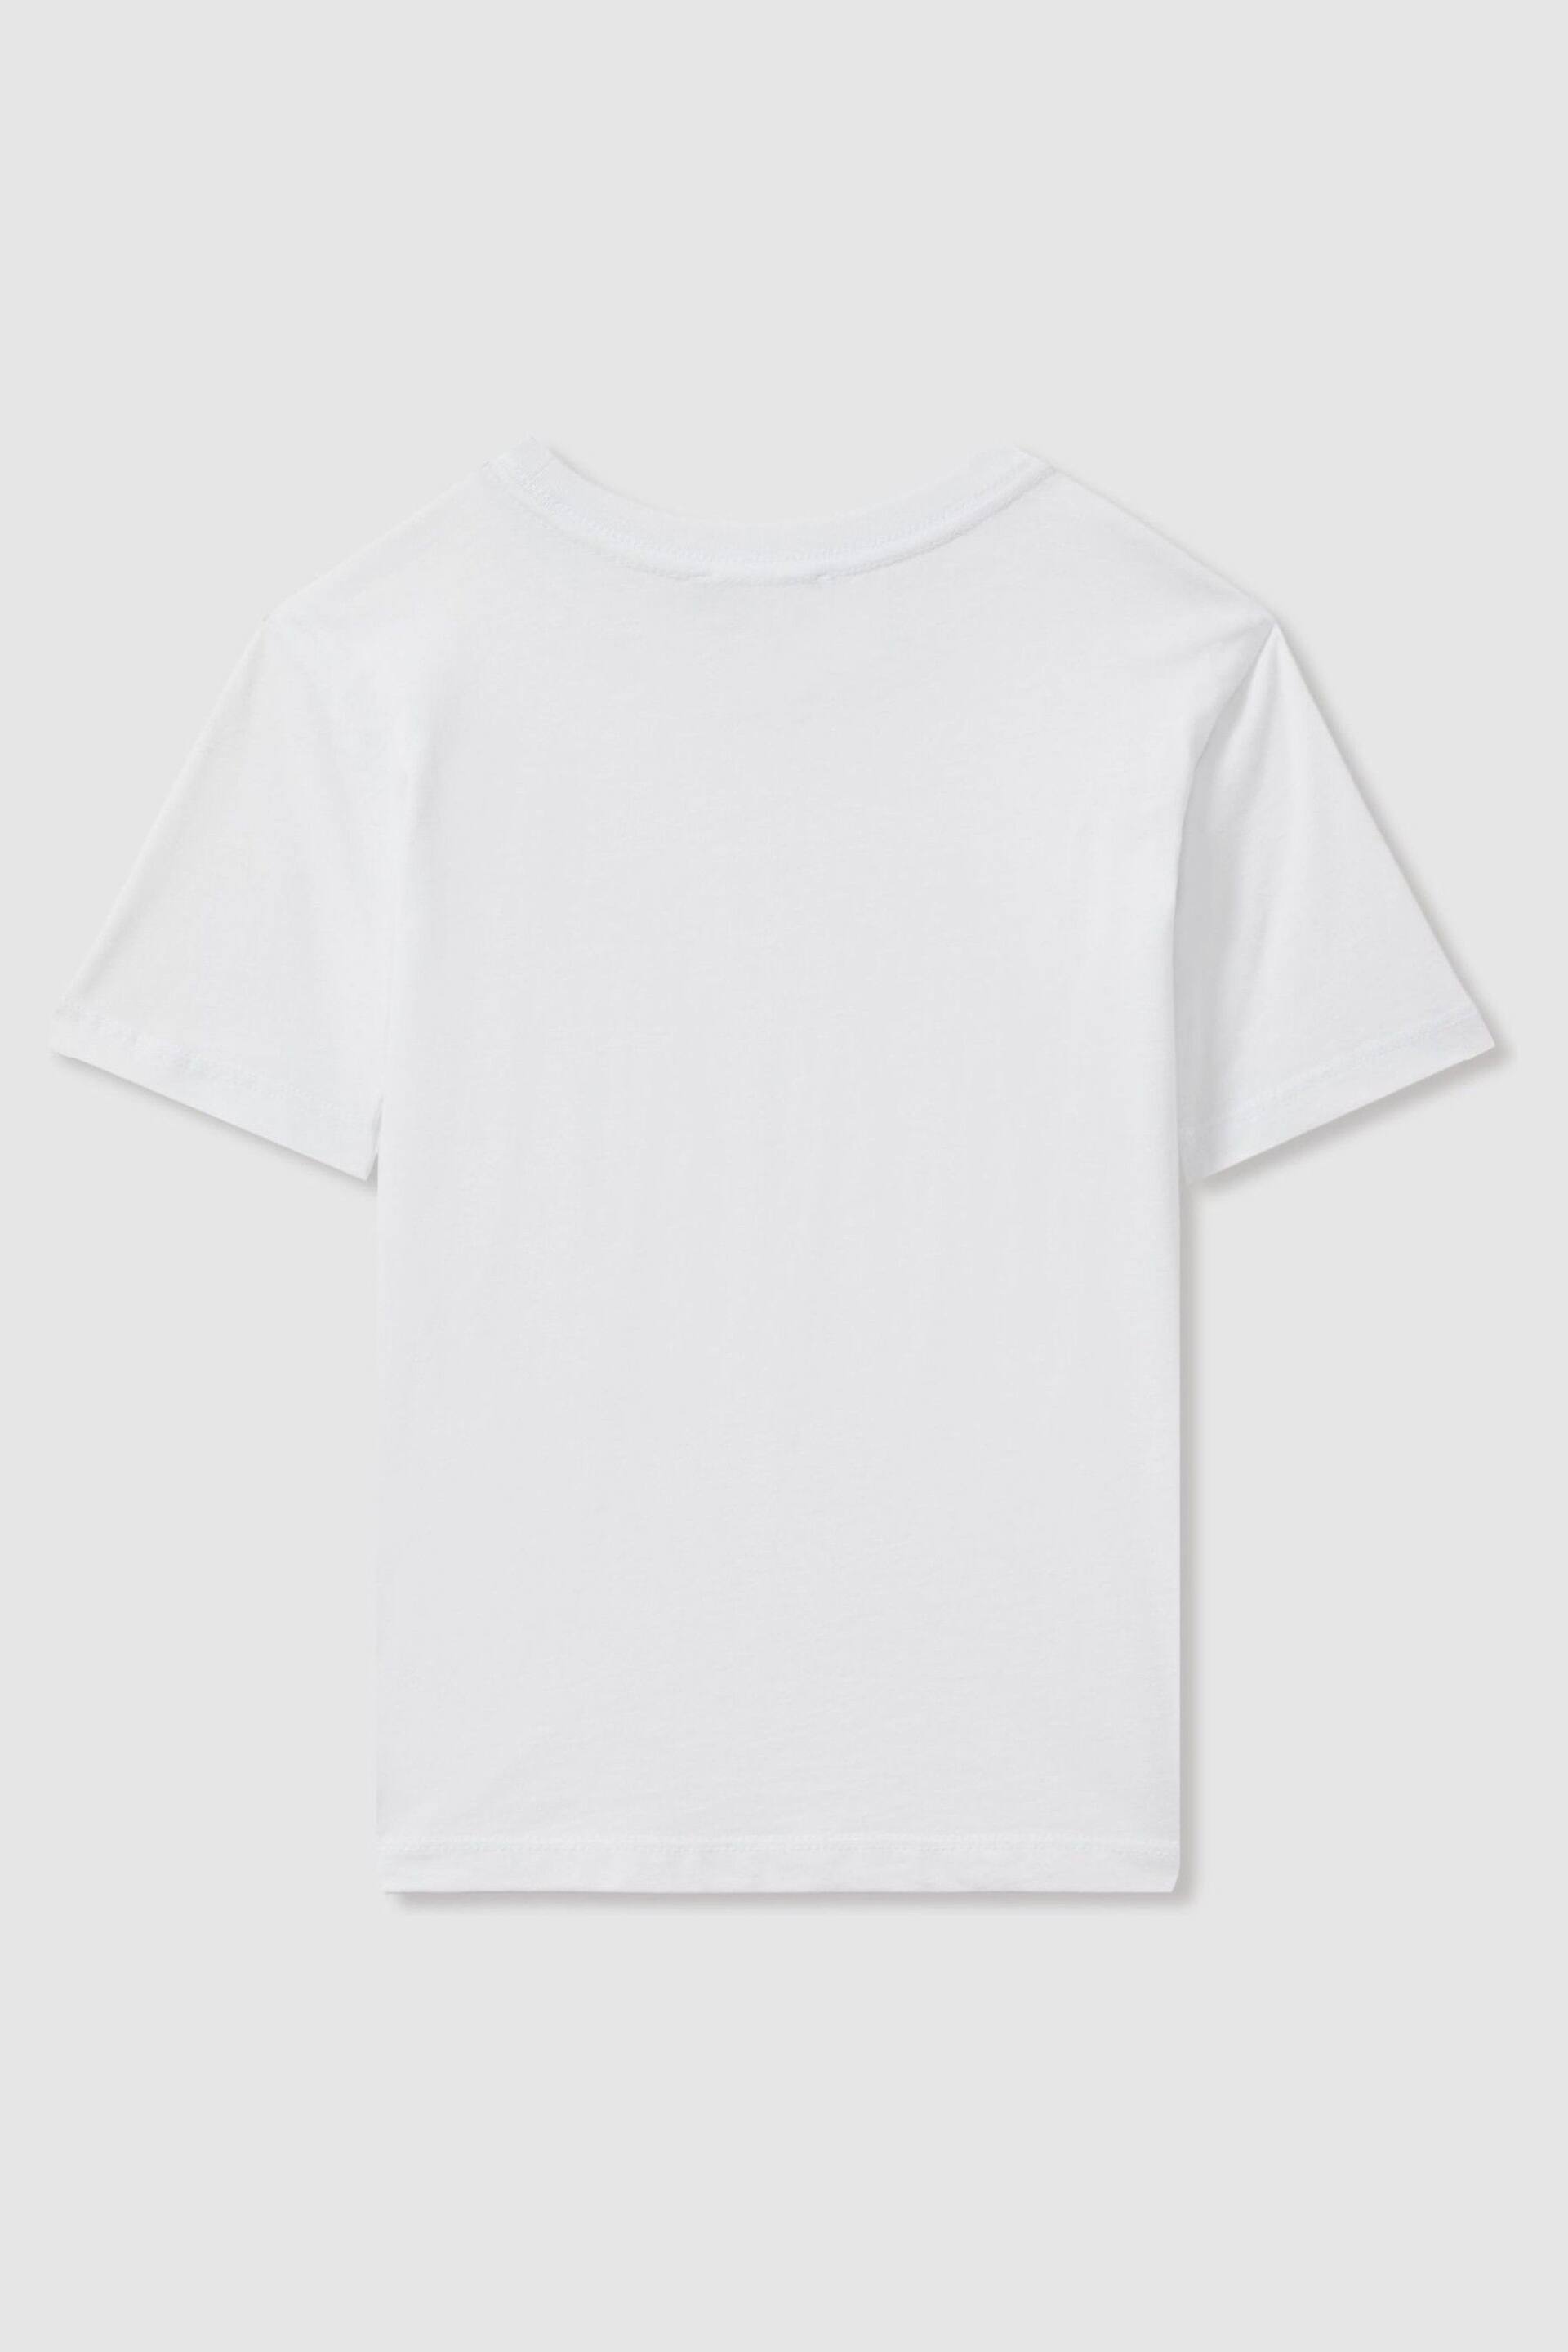 Reiss White Bless Junior Crew Neck T-Shirt - Image 2 of 7